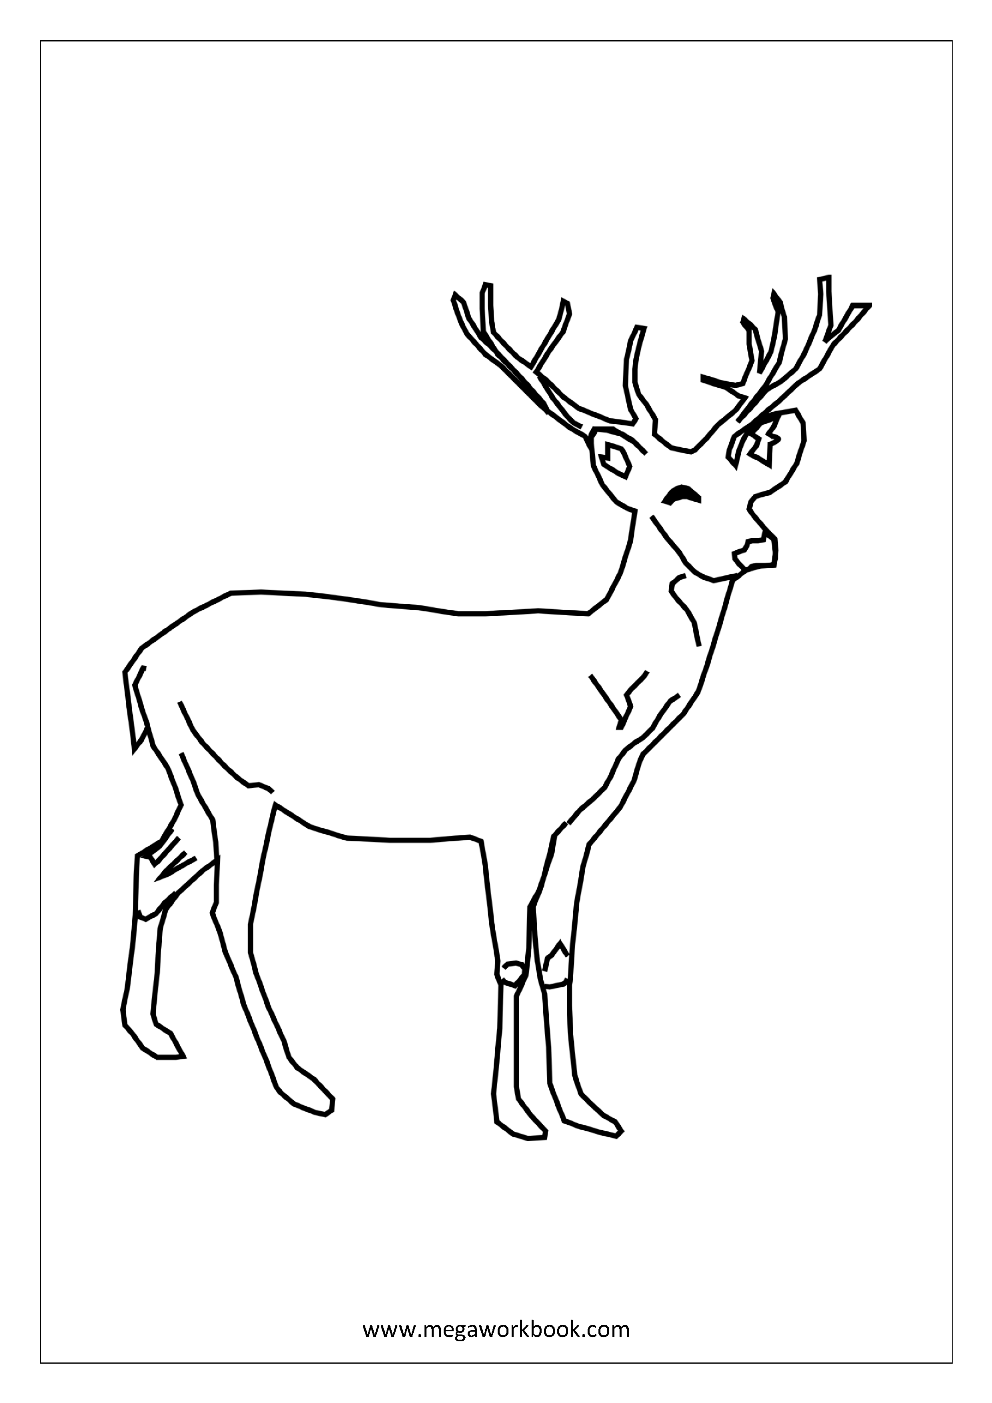 Animals coloring page for kids - Tipss und Vorlagen